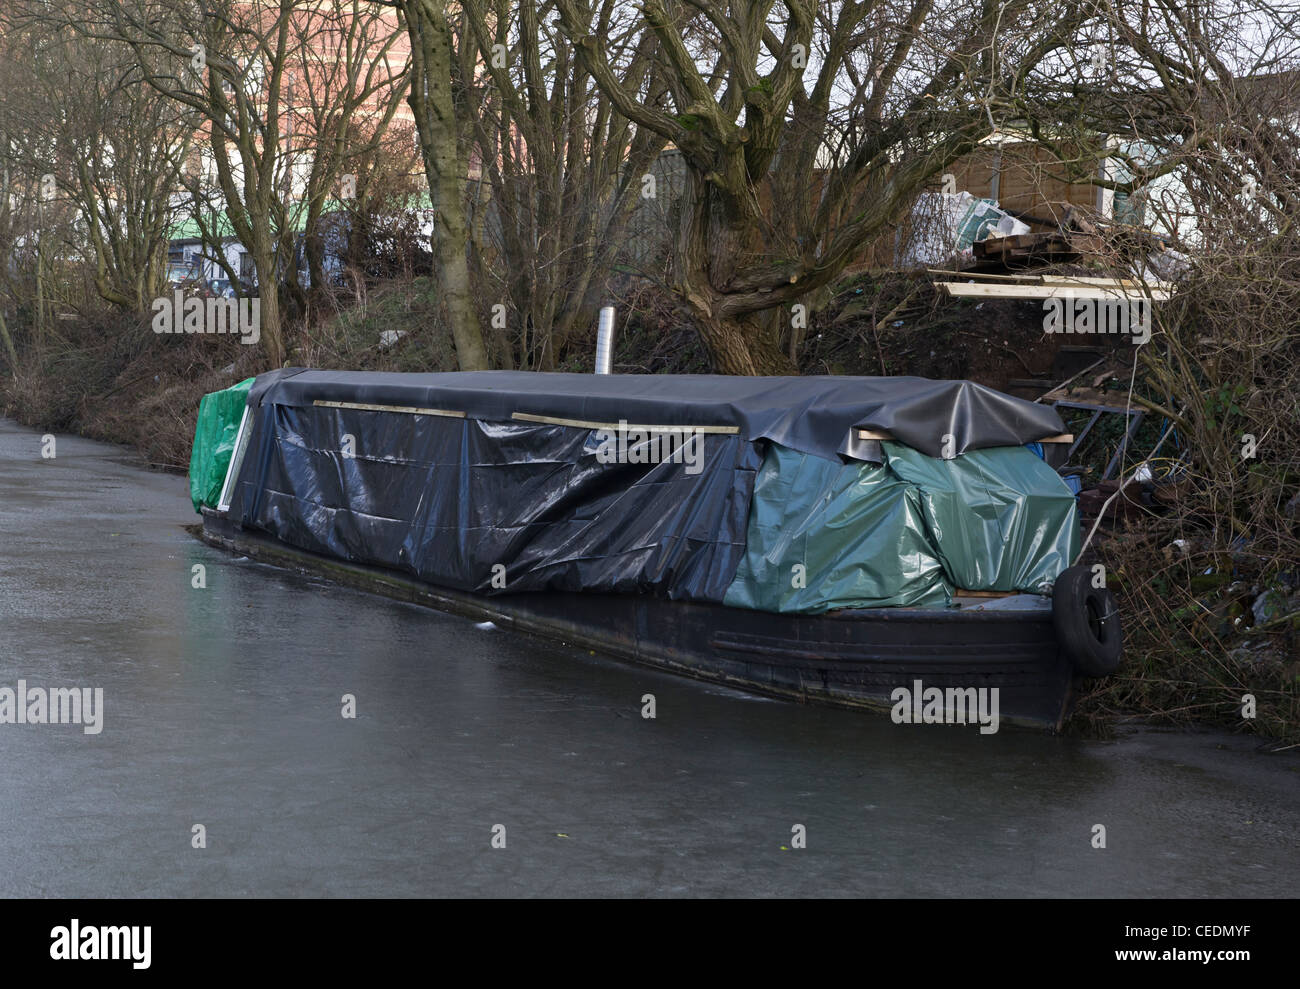 Canal angosto barco cubierto en láminas protectoras en un canal congelado Foto de stock